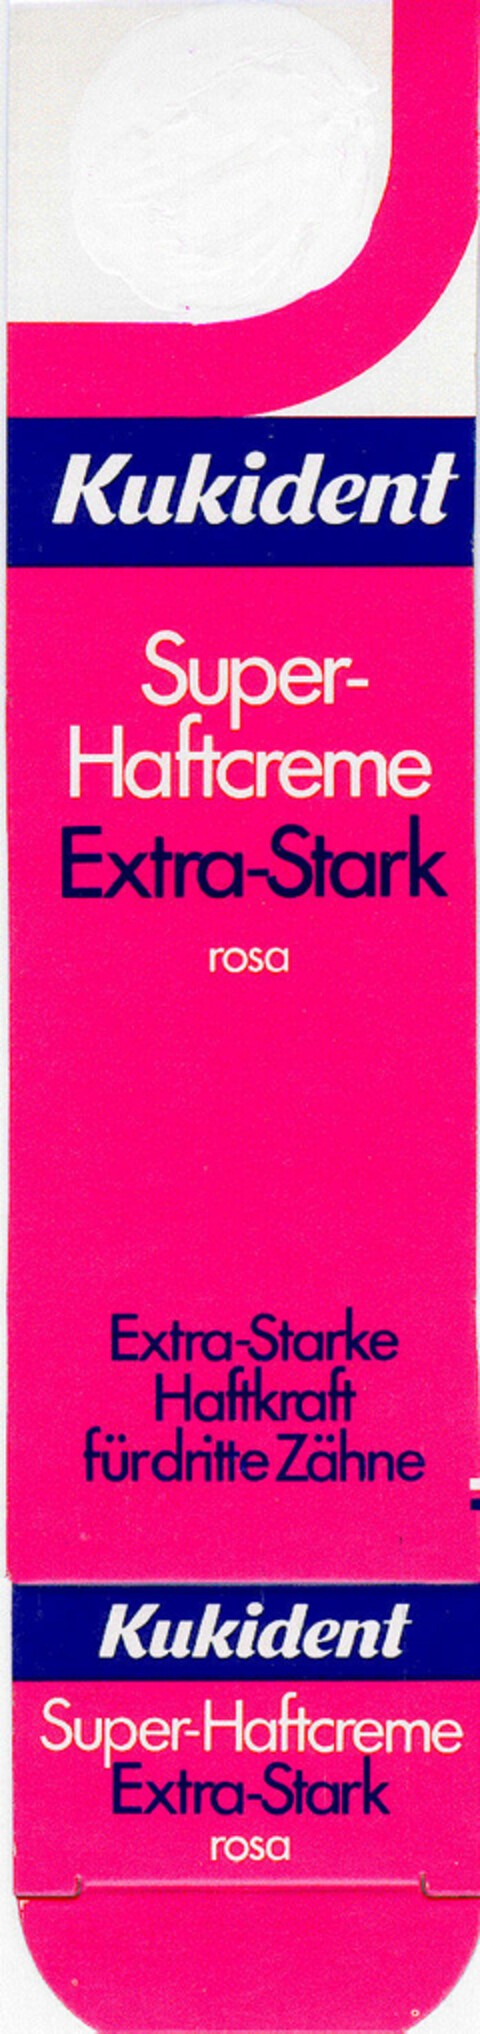 Kukident Super-Haftcreme Extra-Stark Logo (DPMA, 25.07.1984)